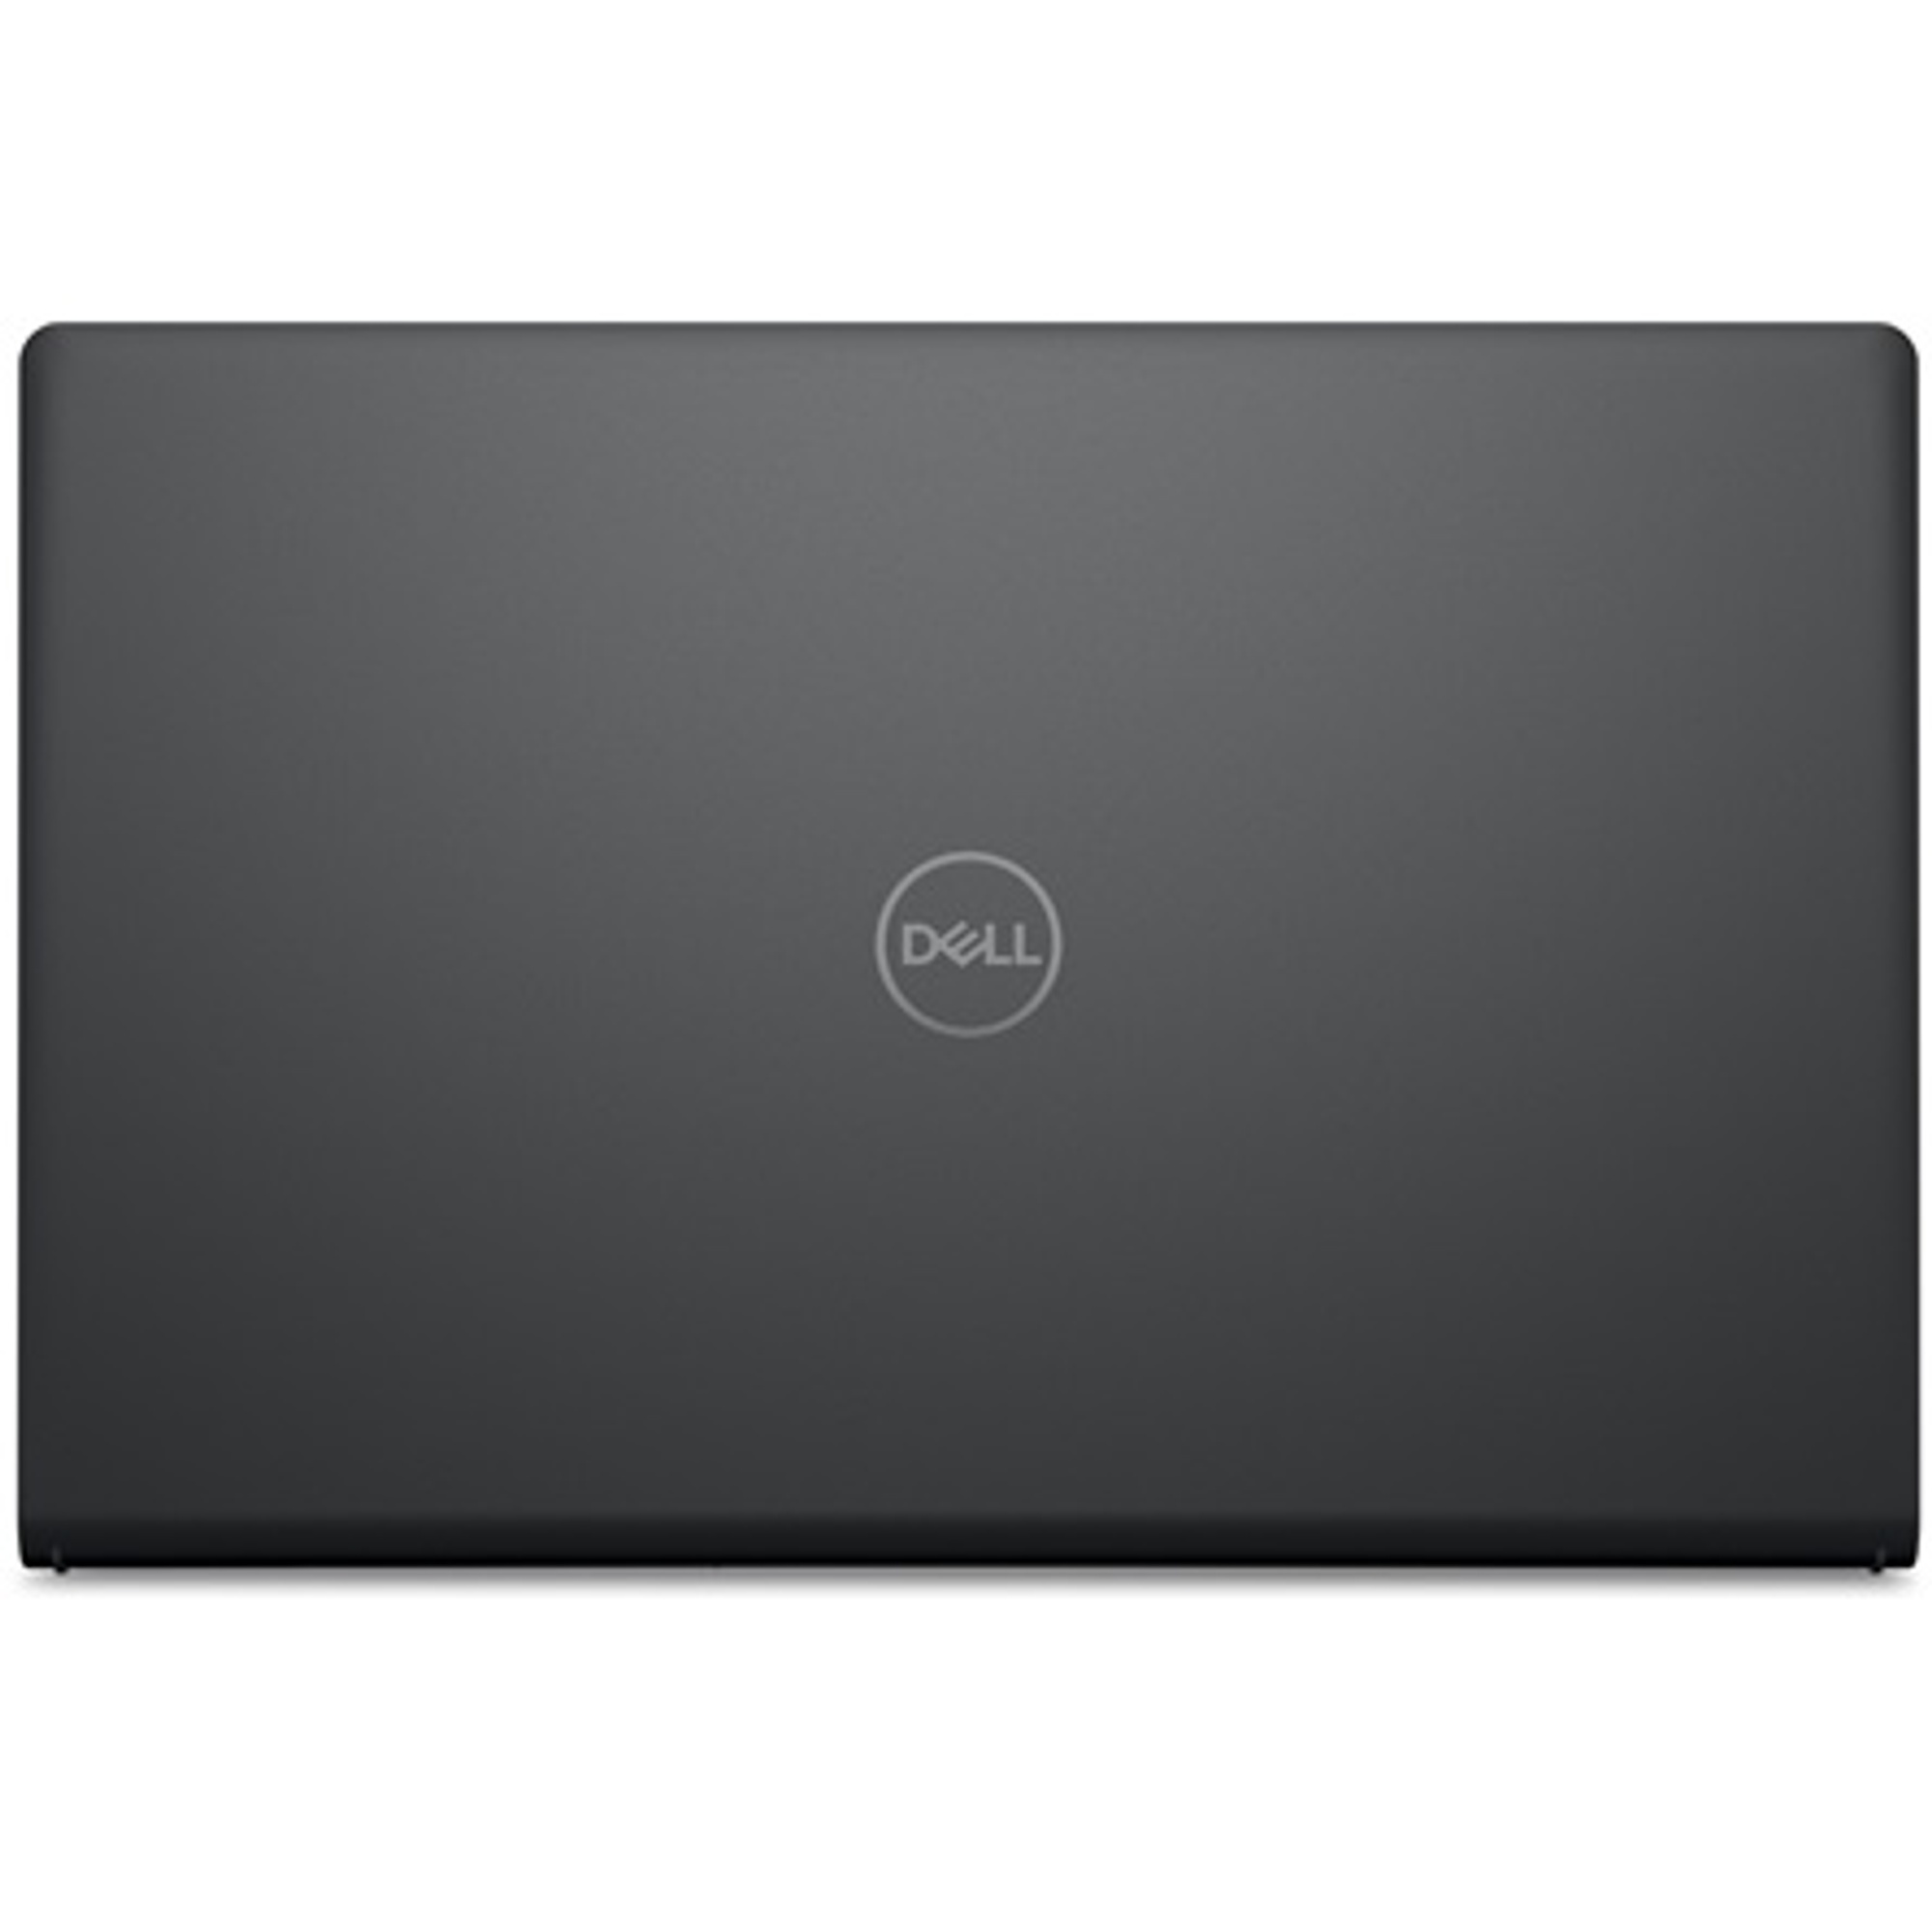 DELL V3520-17 Laptop / Notebook 5